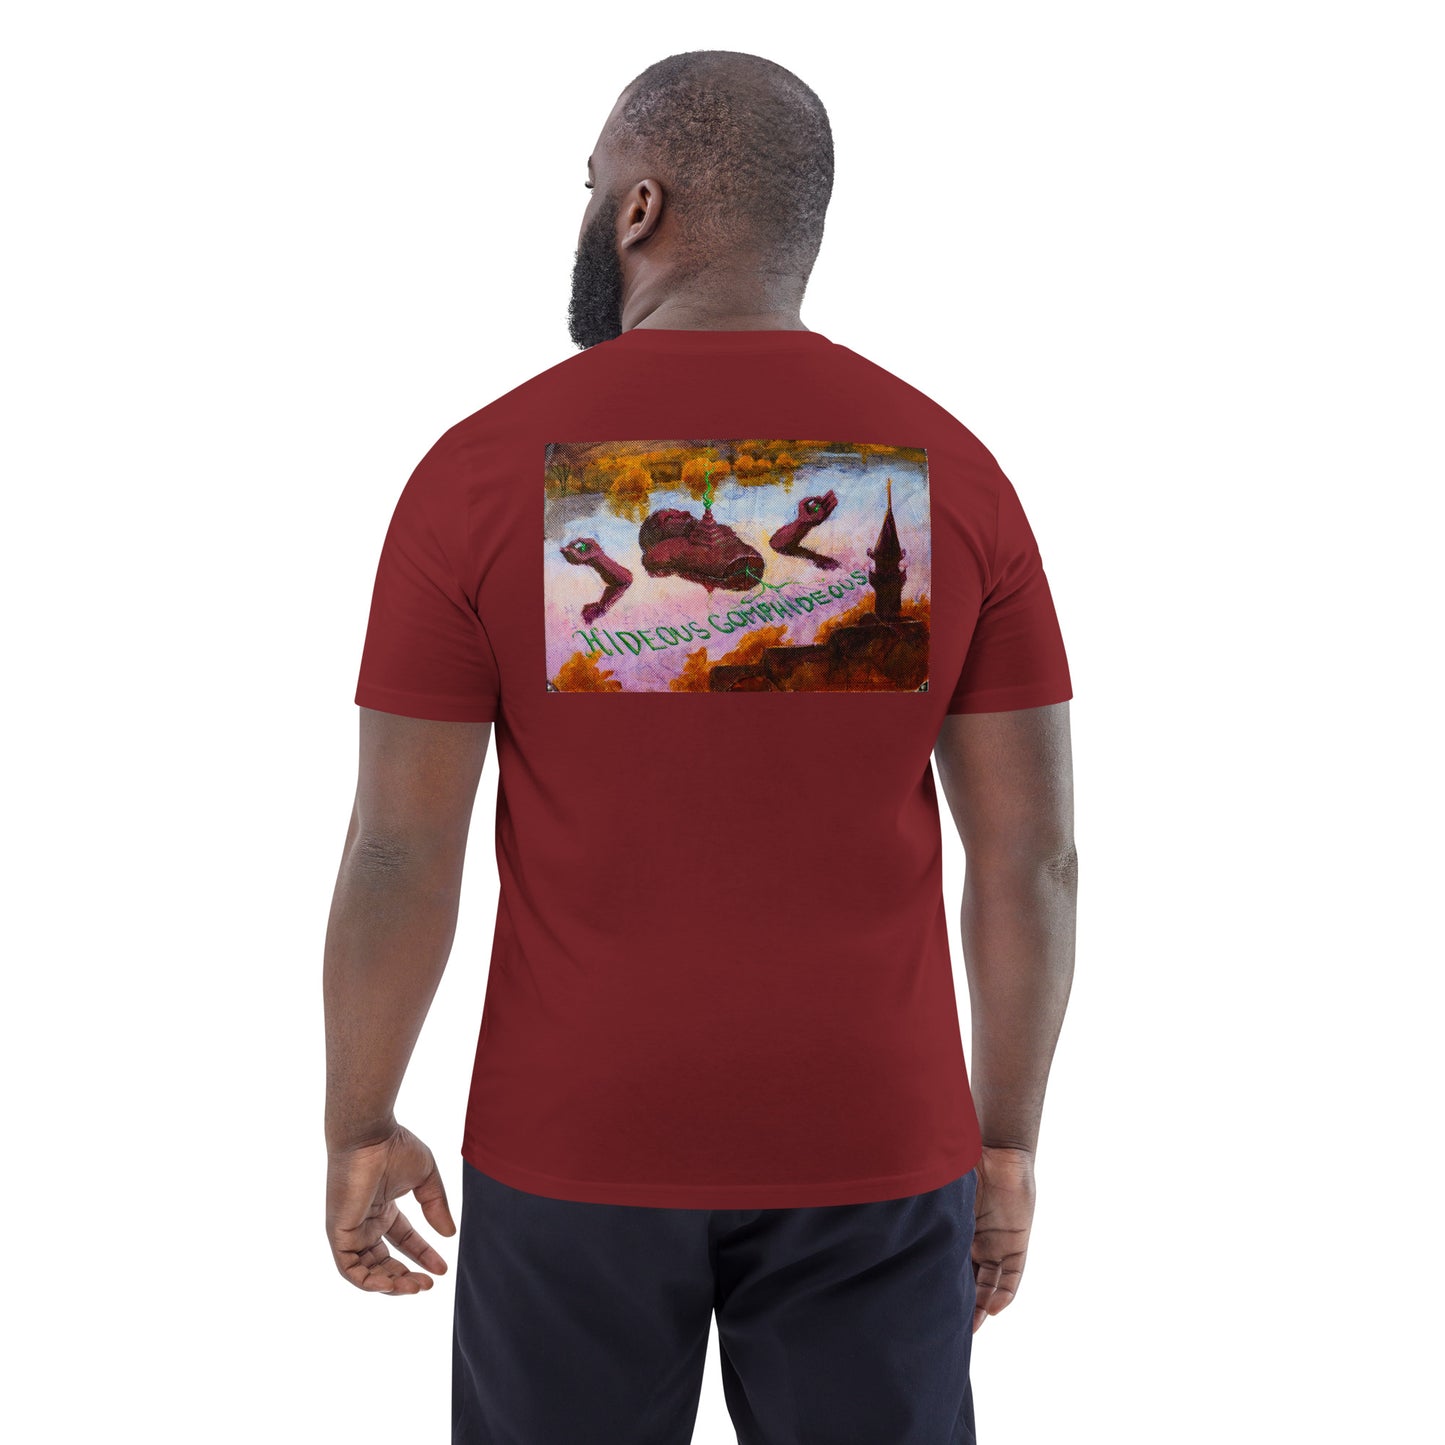 Hideous Gomphideous T-Rex Shirt